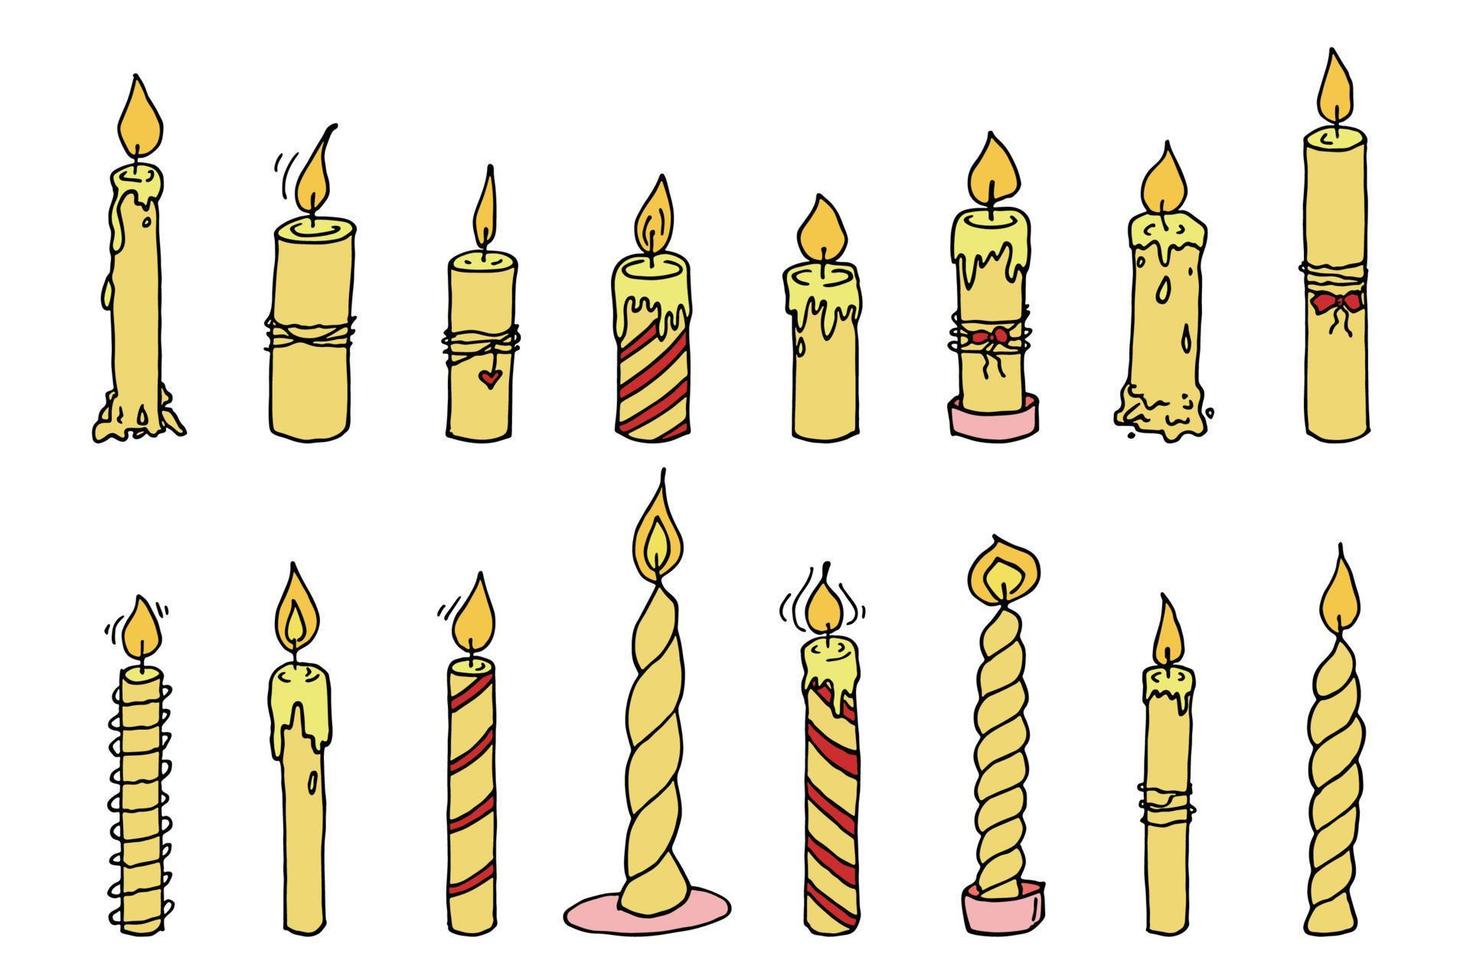 conjunto de velas acesas. ilustração de rabiscos. clipart desenhado à mão para cartão, logotipo, design vetor